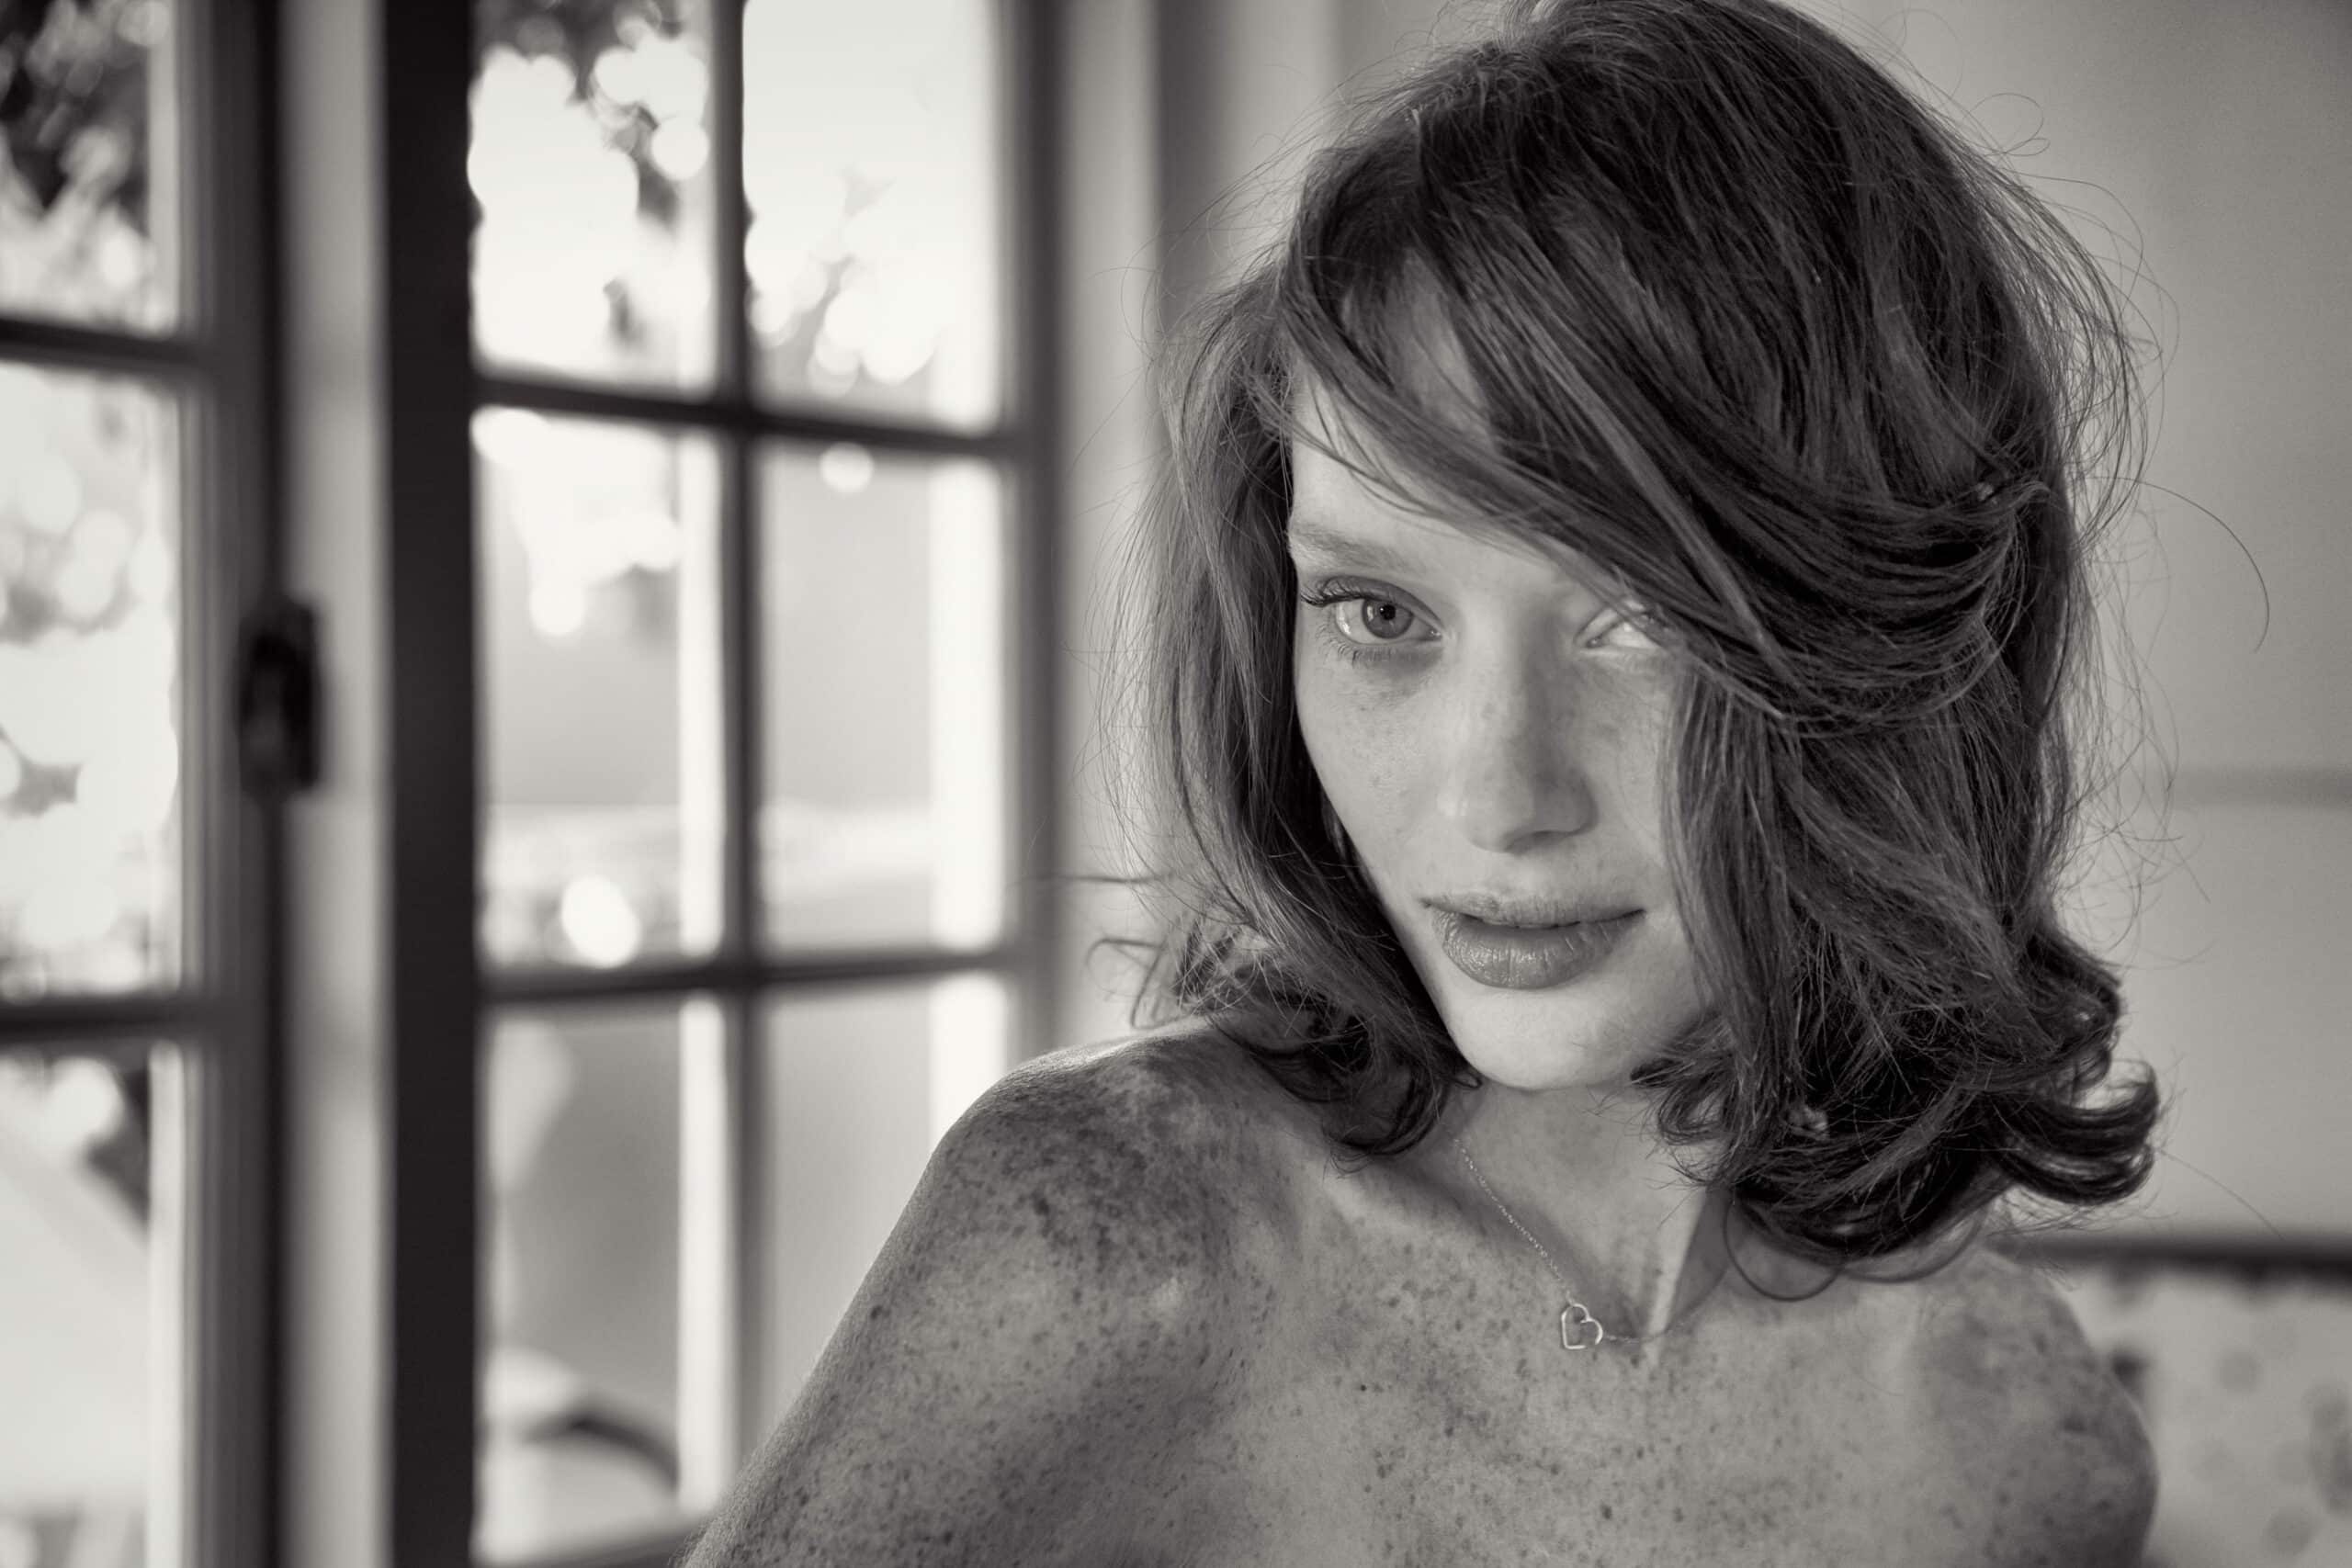 Schwarz-Weiß-Porträt einer Frau mit zerzaustem Haar, die mit aufmerksamem Blick in die Kamera blickt, neben einem gut beleuchteten Fenster mit Türen im Hintergrund. © Fotografie Tomas Rodriguez